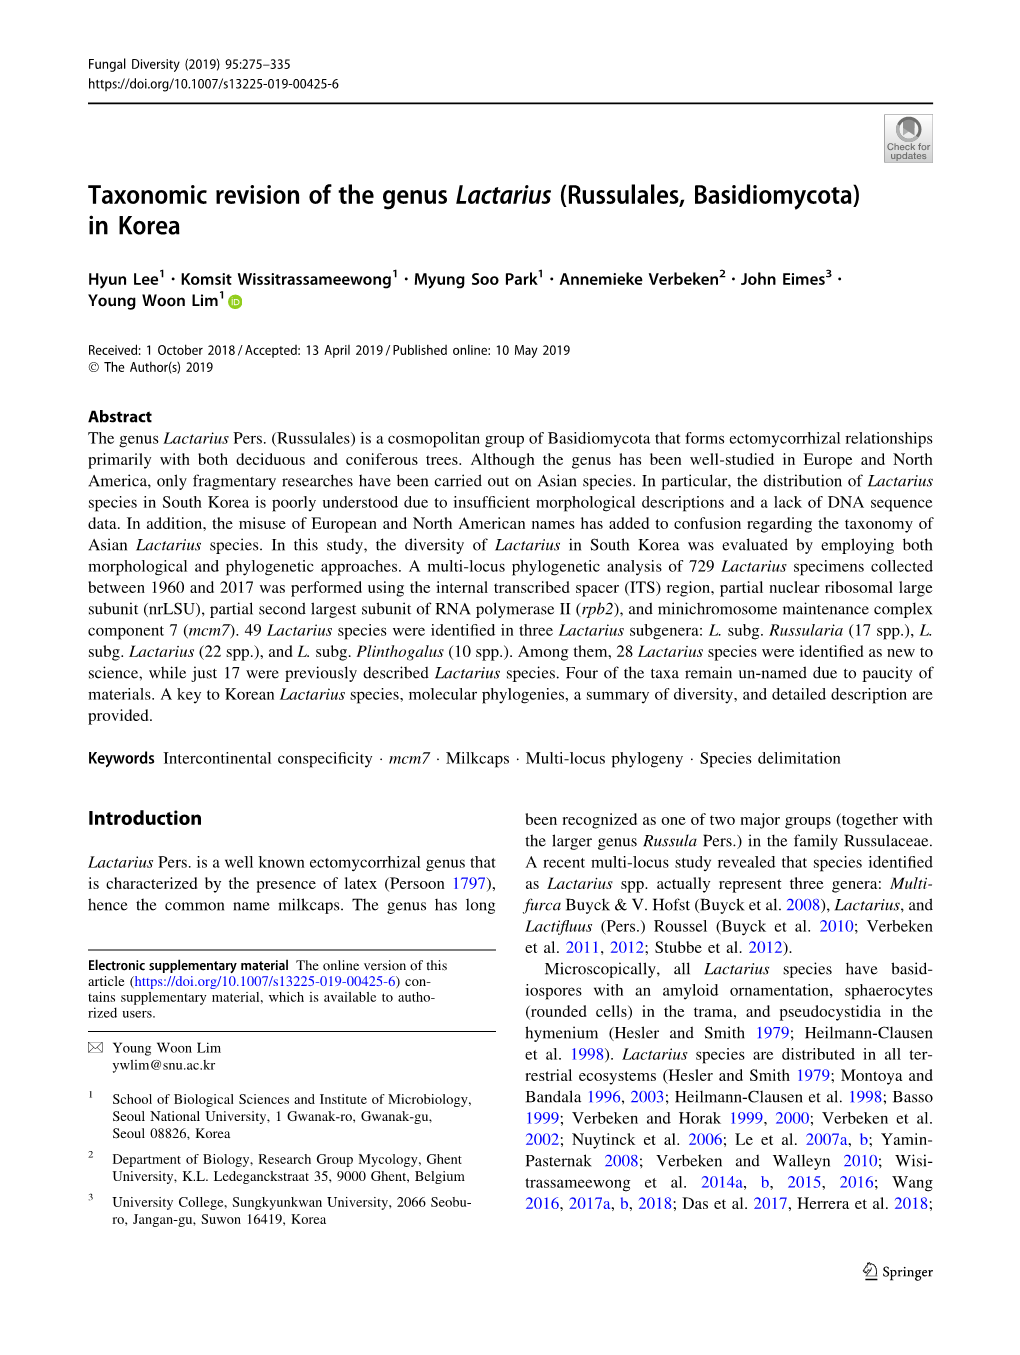 Taxonomic Revision of the Genus Lactarius (Russulales, Basidiomycota) in Korea